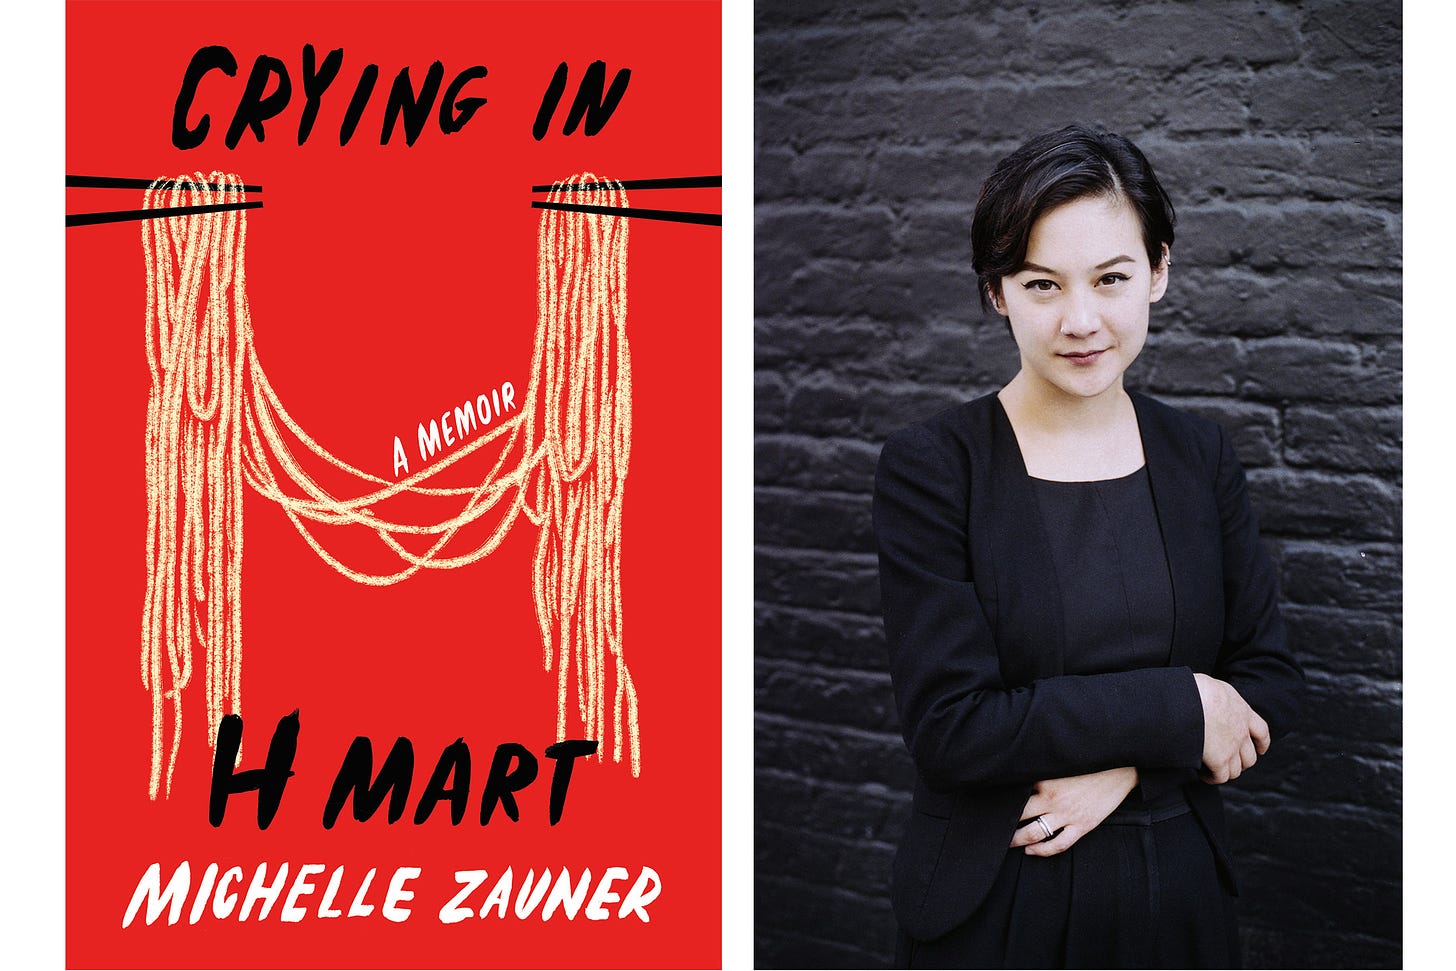 Michelle Zauner, Japanese Breakfast, Talks 'Crying in H Mart' – WWD